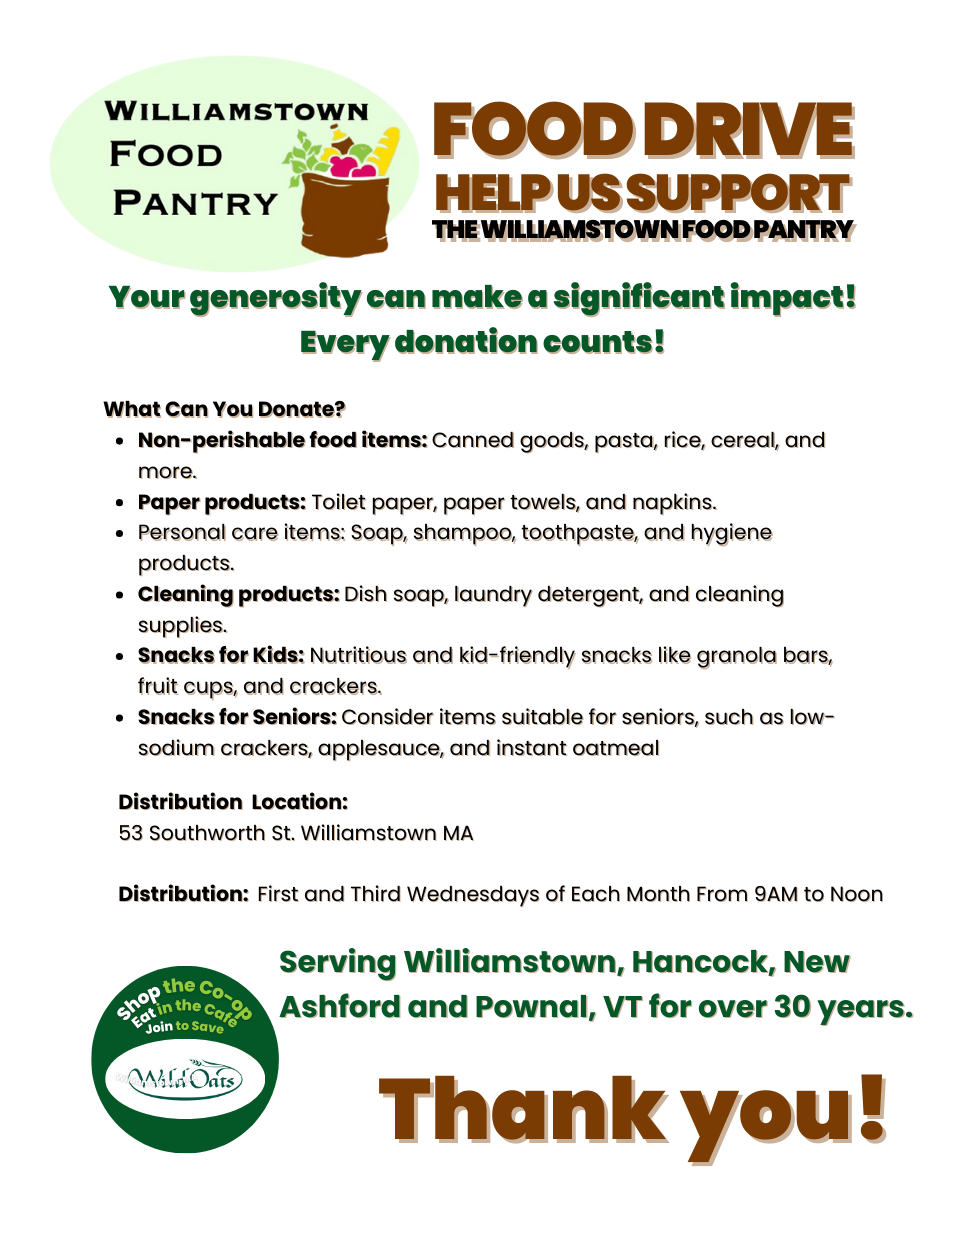 Williamstown Food Pantry Food Drive  Help Us Support  the Williamstown Food Pantry (1).png